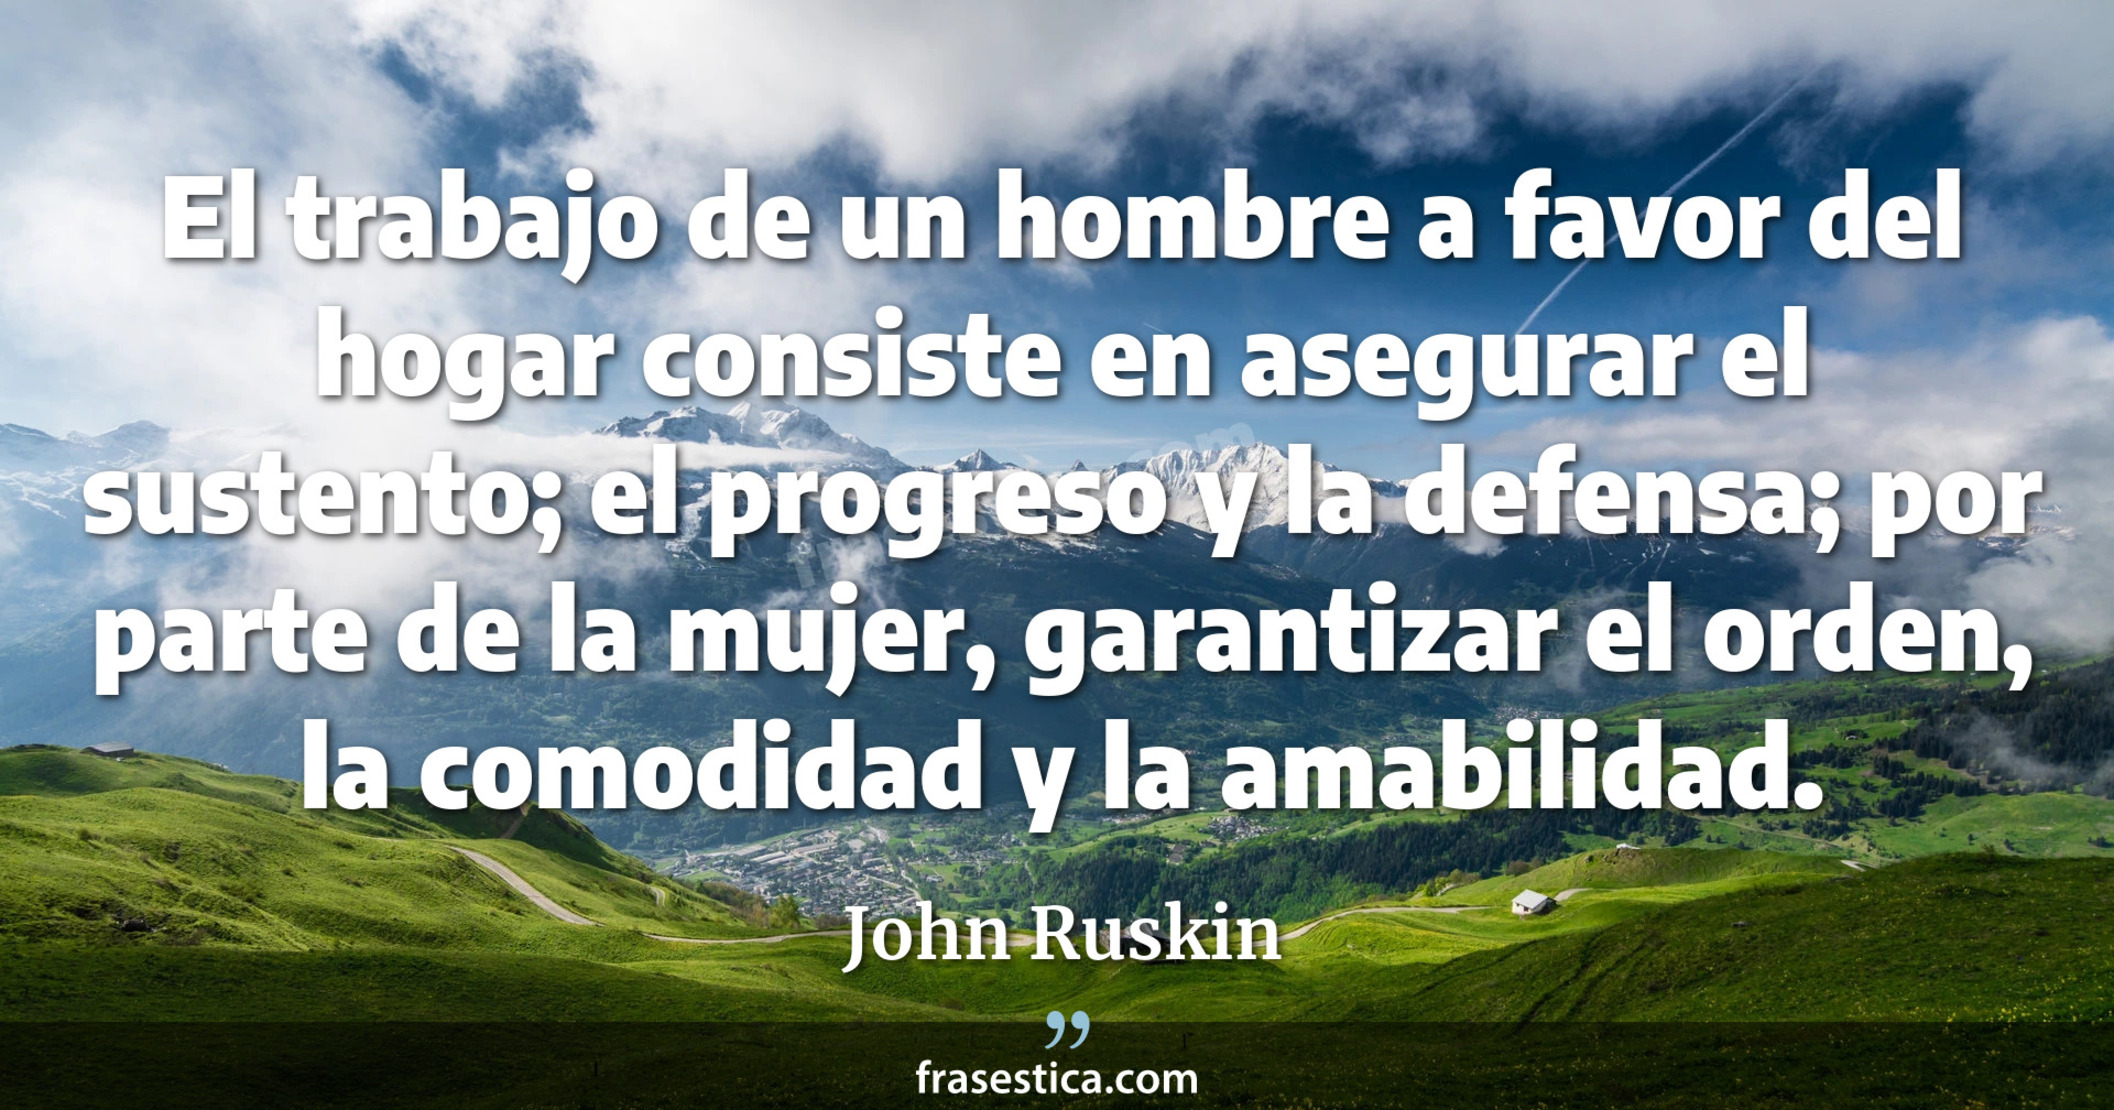 El trabajo de un hombre a favor del hogar consiste en asegurar el sustento; el progreso y la defensa; por parte de la mujer, garantizar el orden, la comodidad y la amabilidad. - John Ruskin